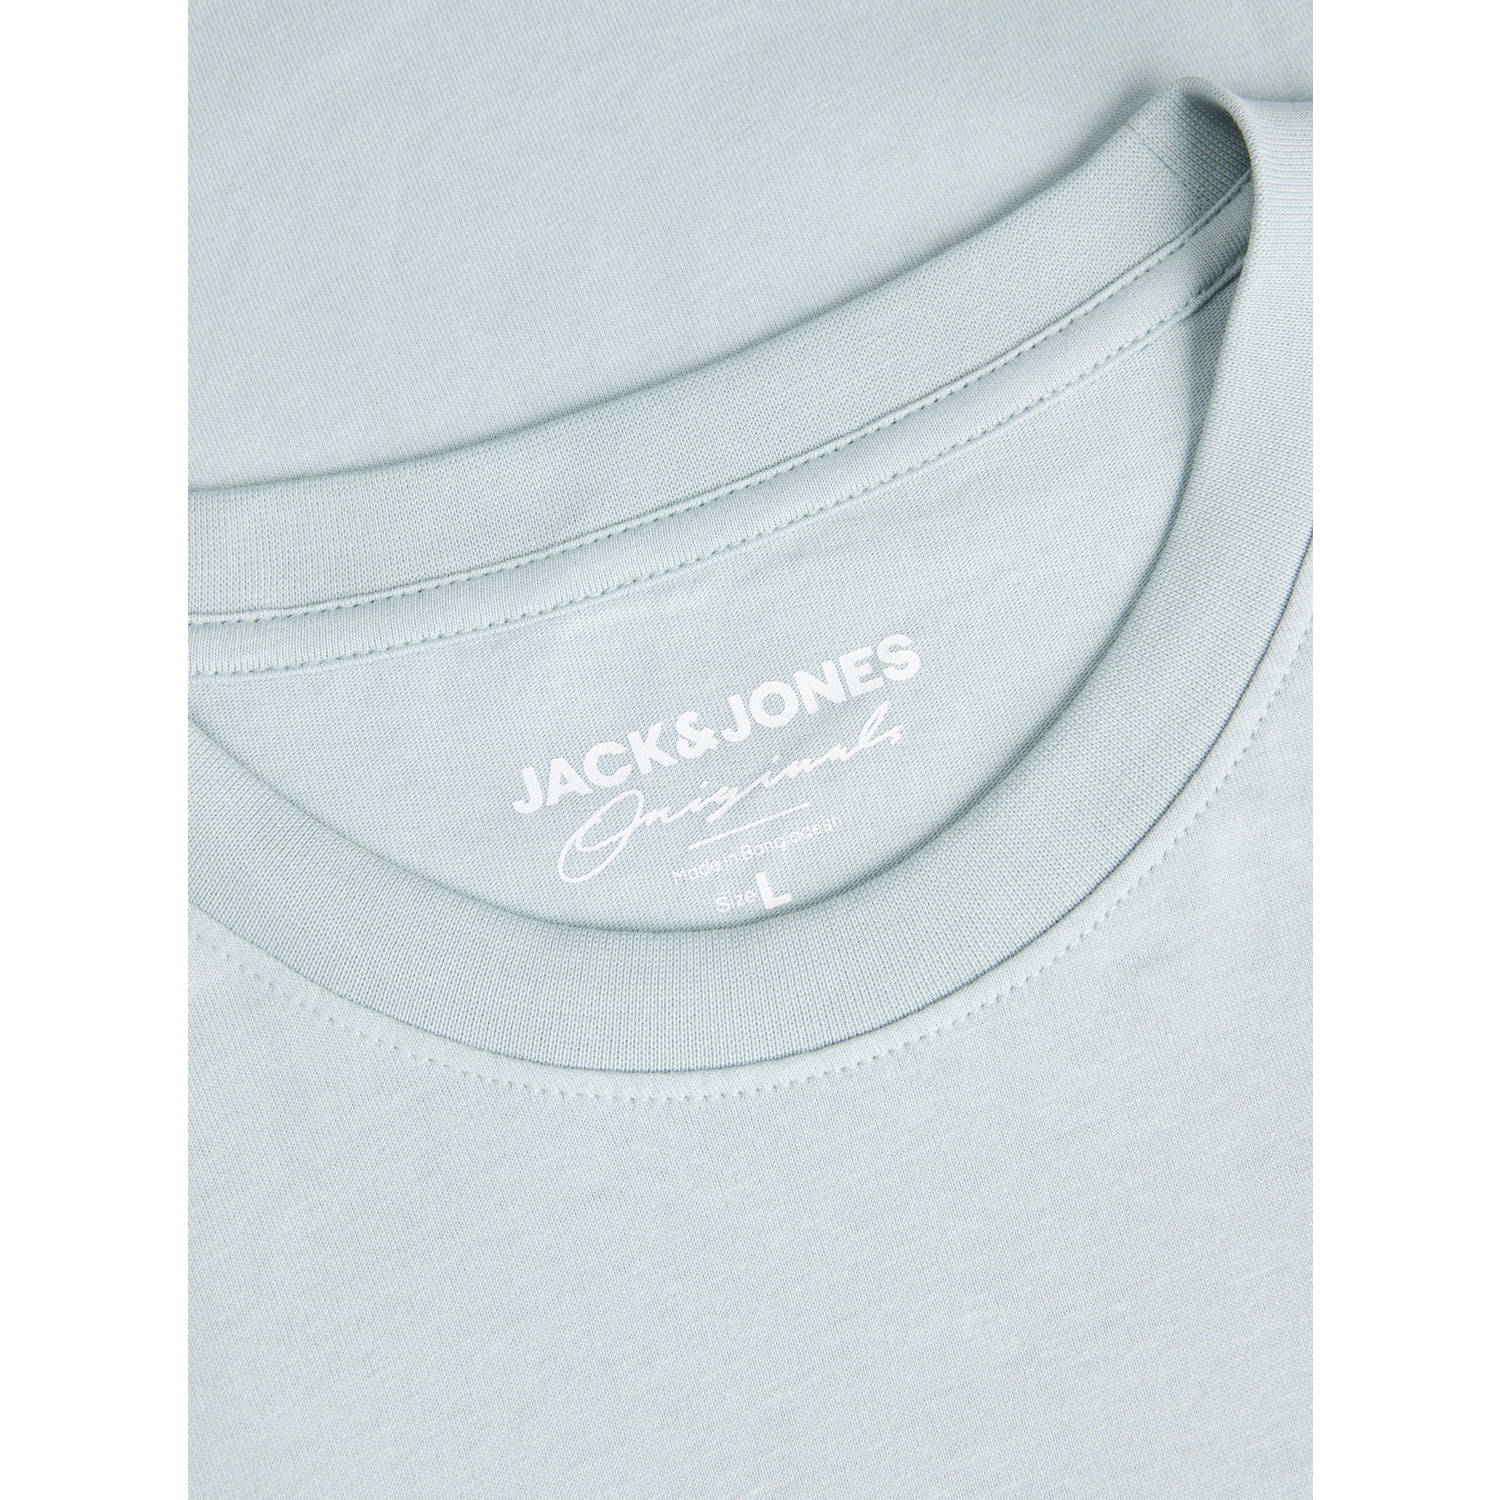 JACK & JONES JUNIOR T-shirt KORVESTERBRO met tekst lichtblauw